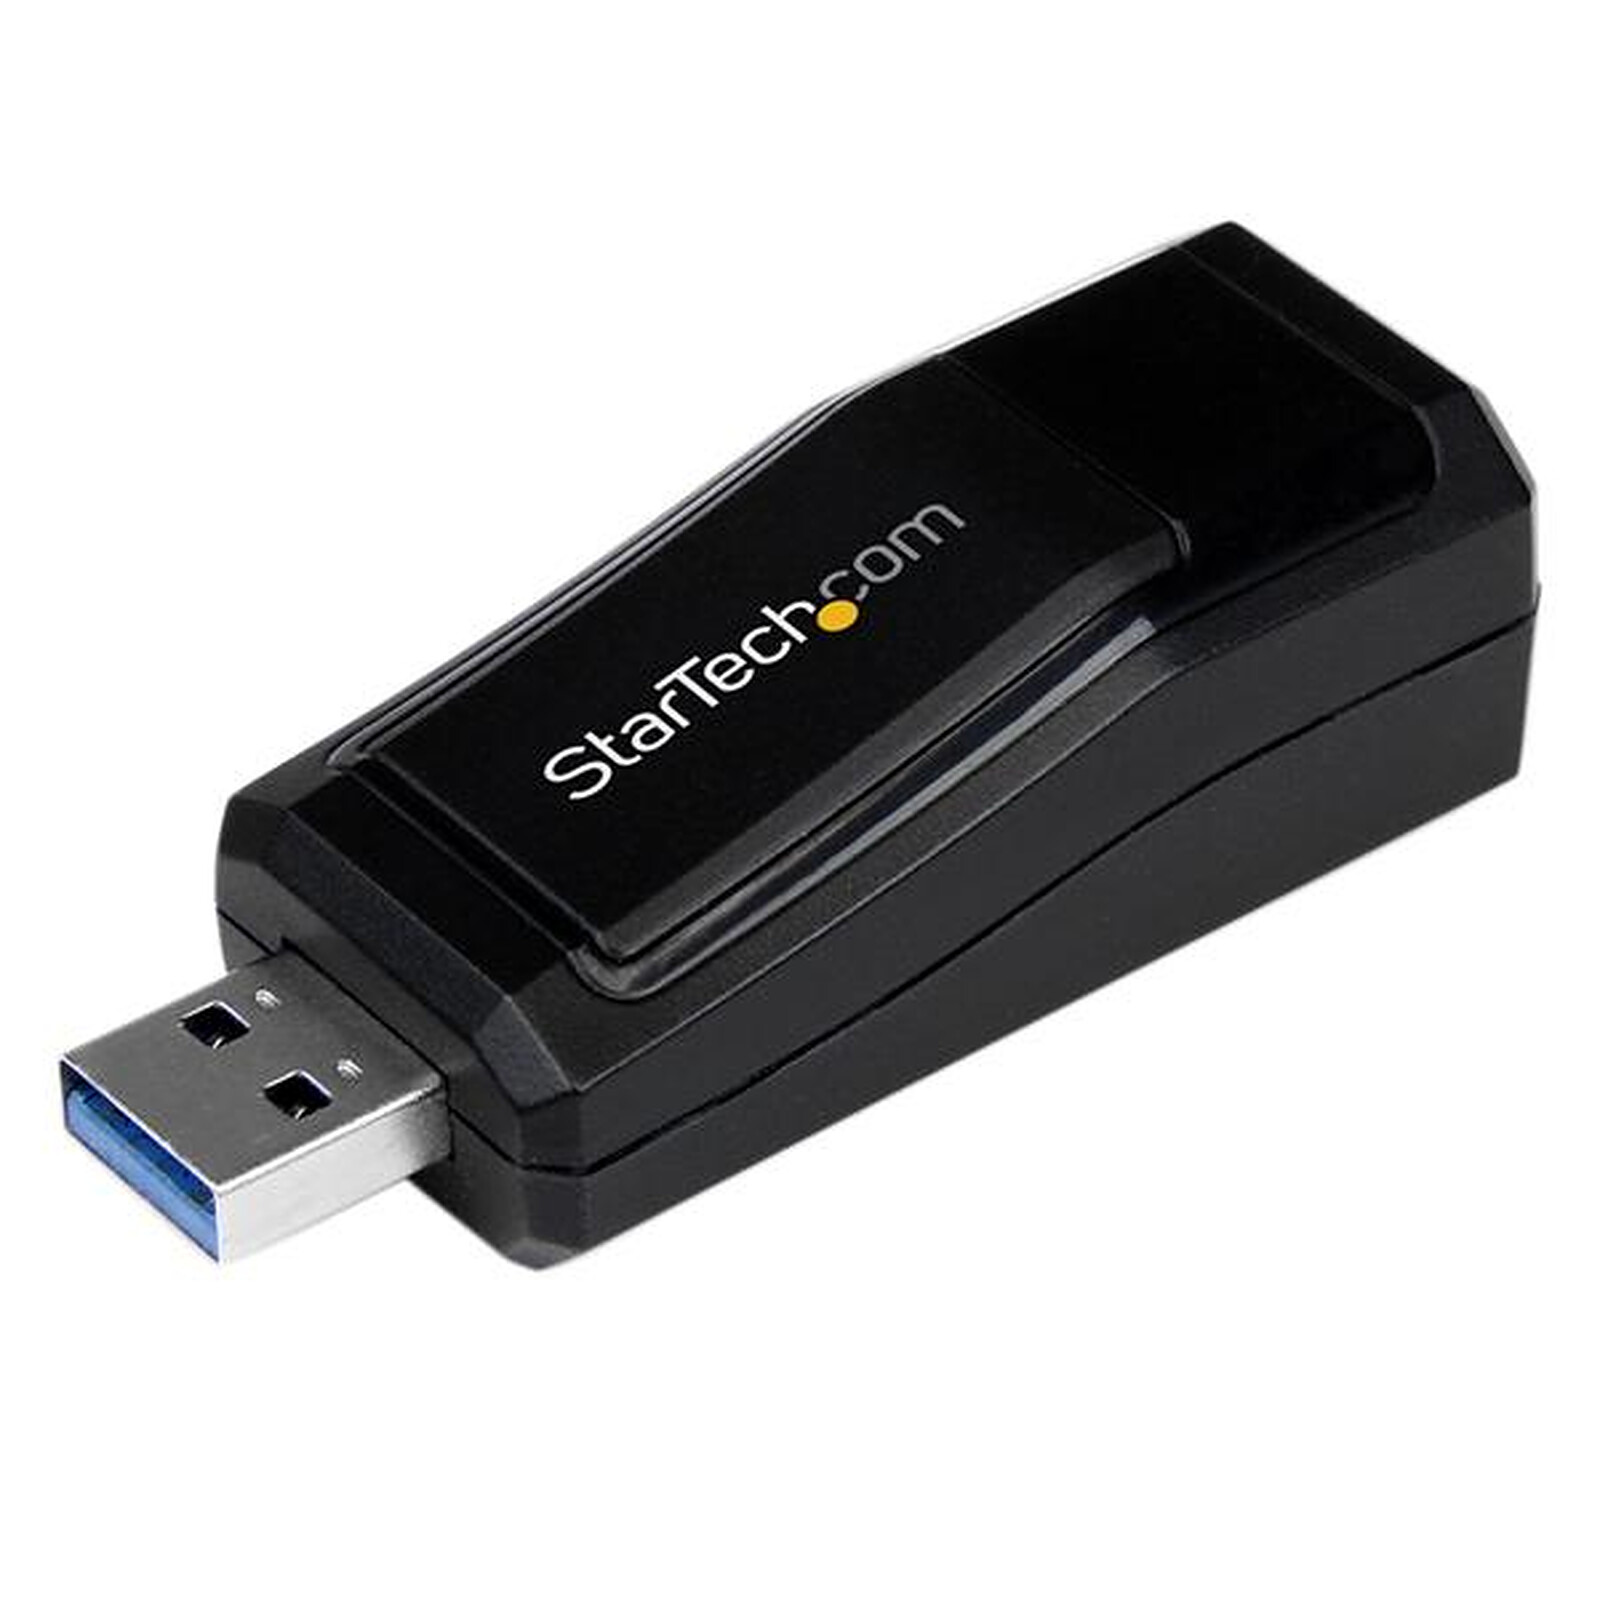 StarTech.com Adaptateur USB 3.0 vers Ethernet Gigabit - Carte Réseau  Externe USB vers 2 Ports RJ45 Ethernet - SECOMP France